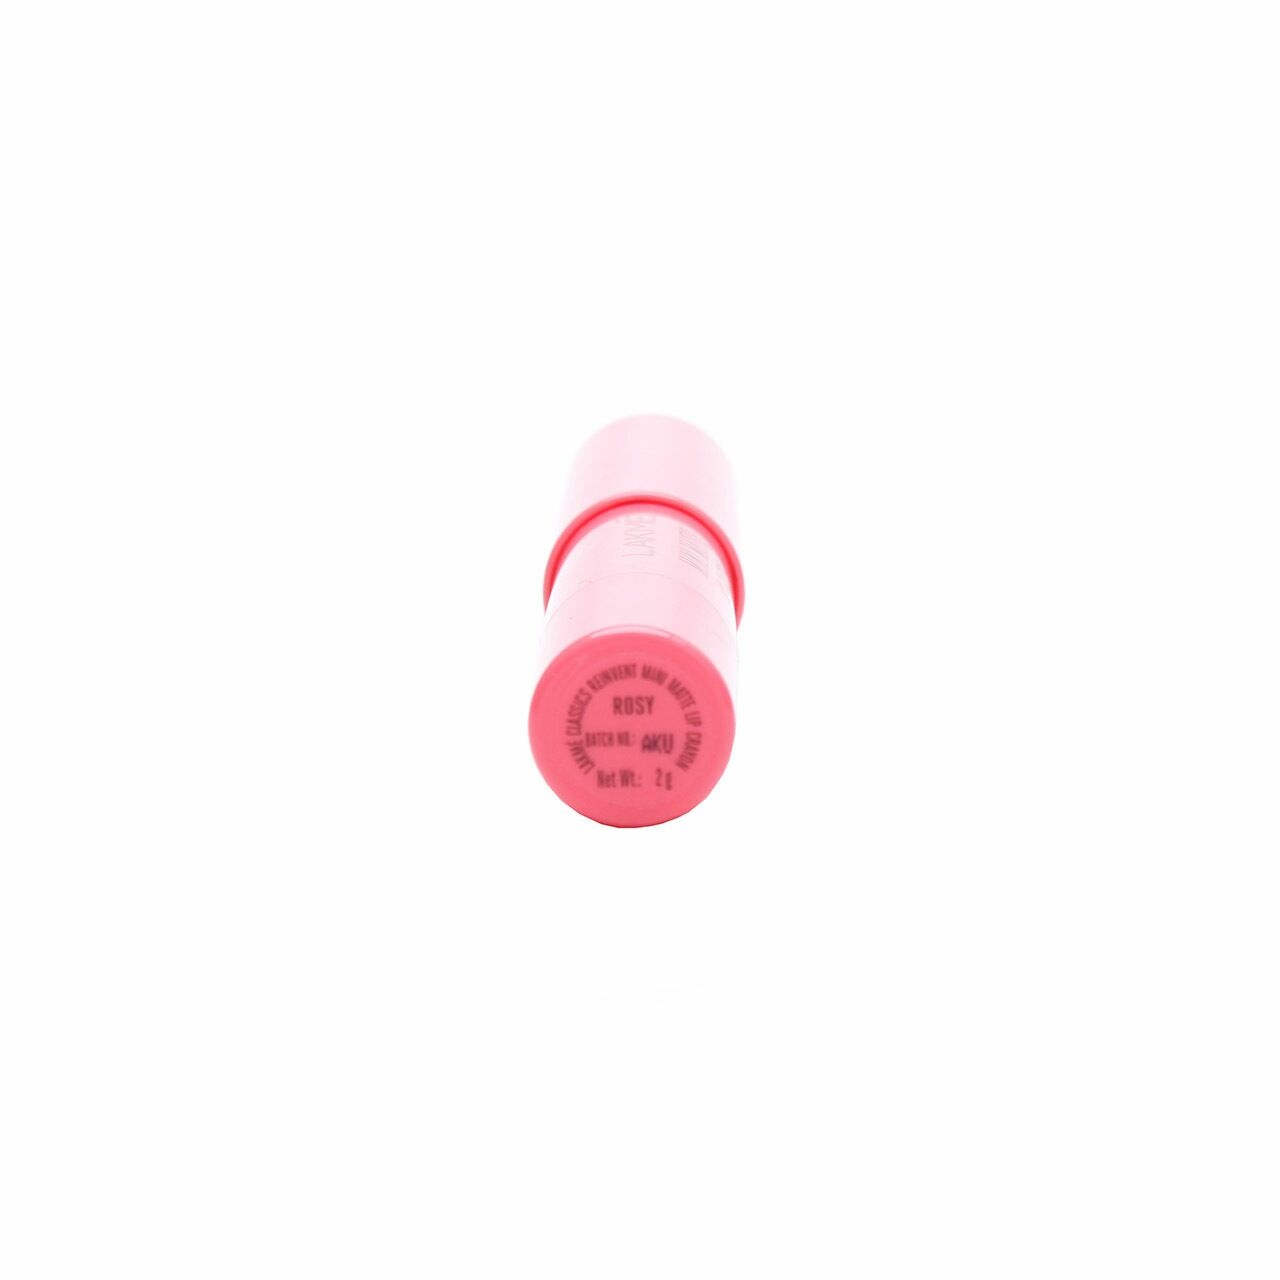 Lakme Rosy Mini Matte Lip Crayon